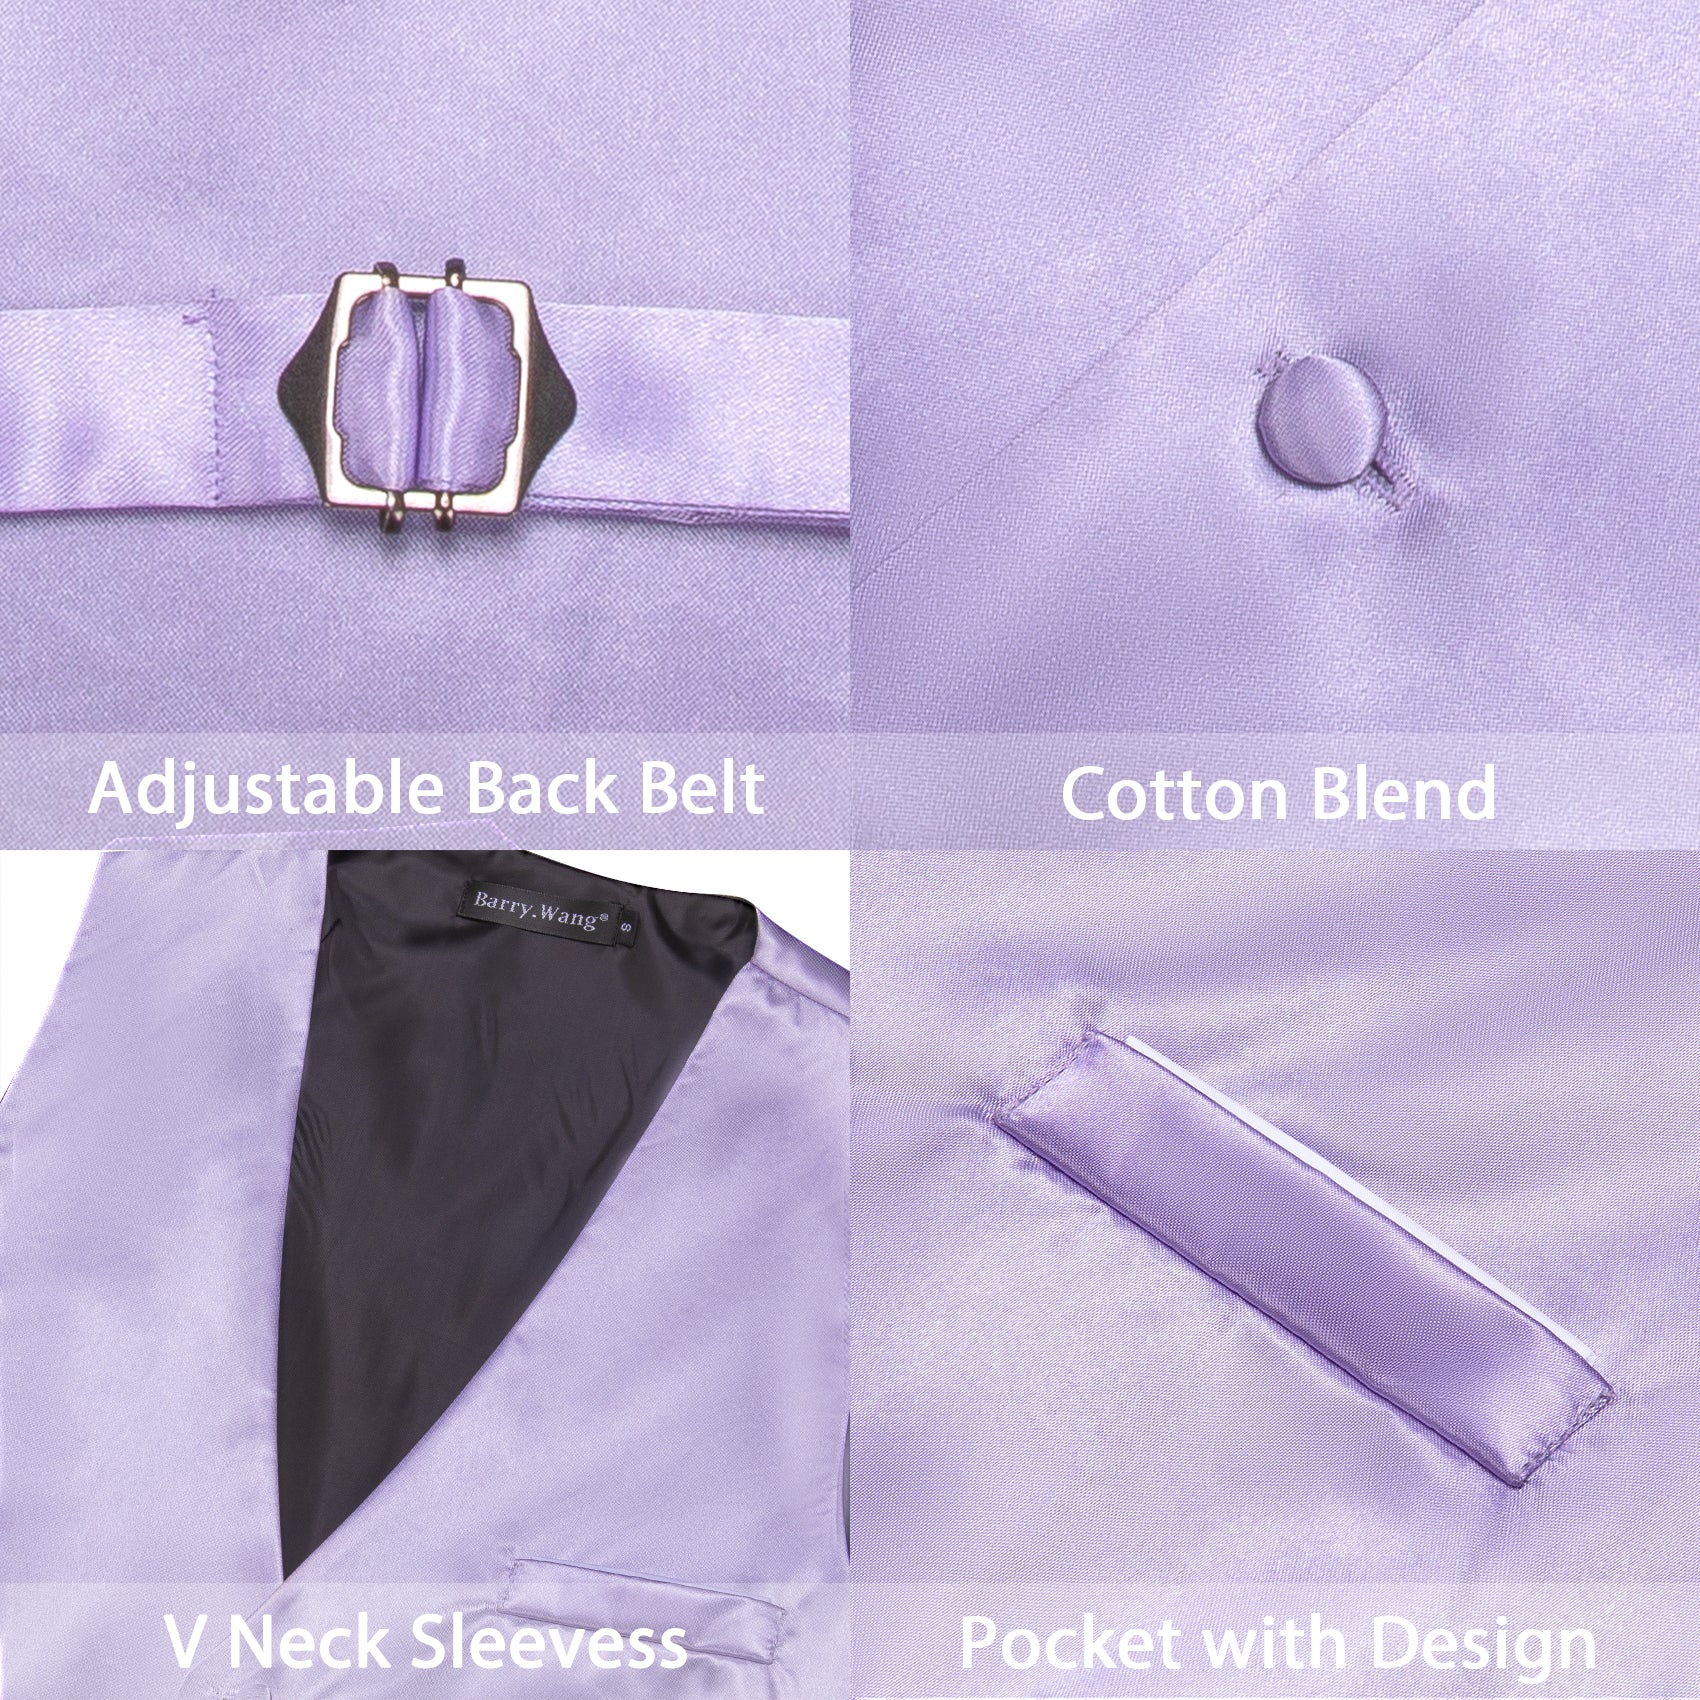 Barry Wang Suit Vest Men's Purple Solid Silk Waistcoat Vest for Party